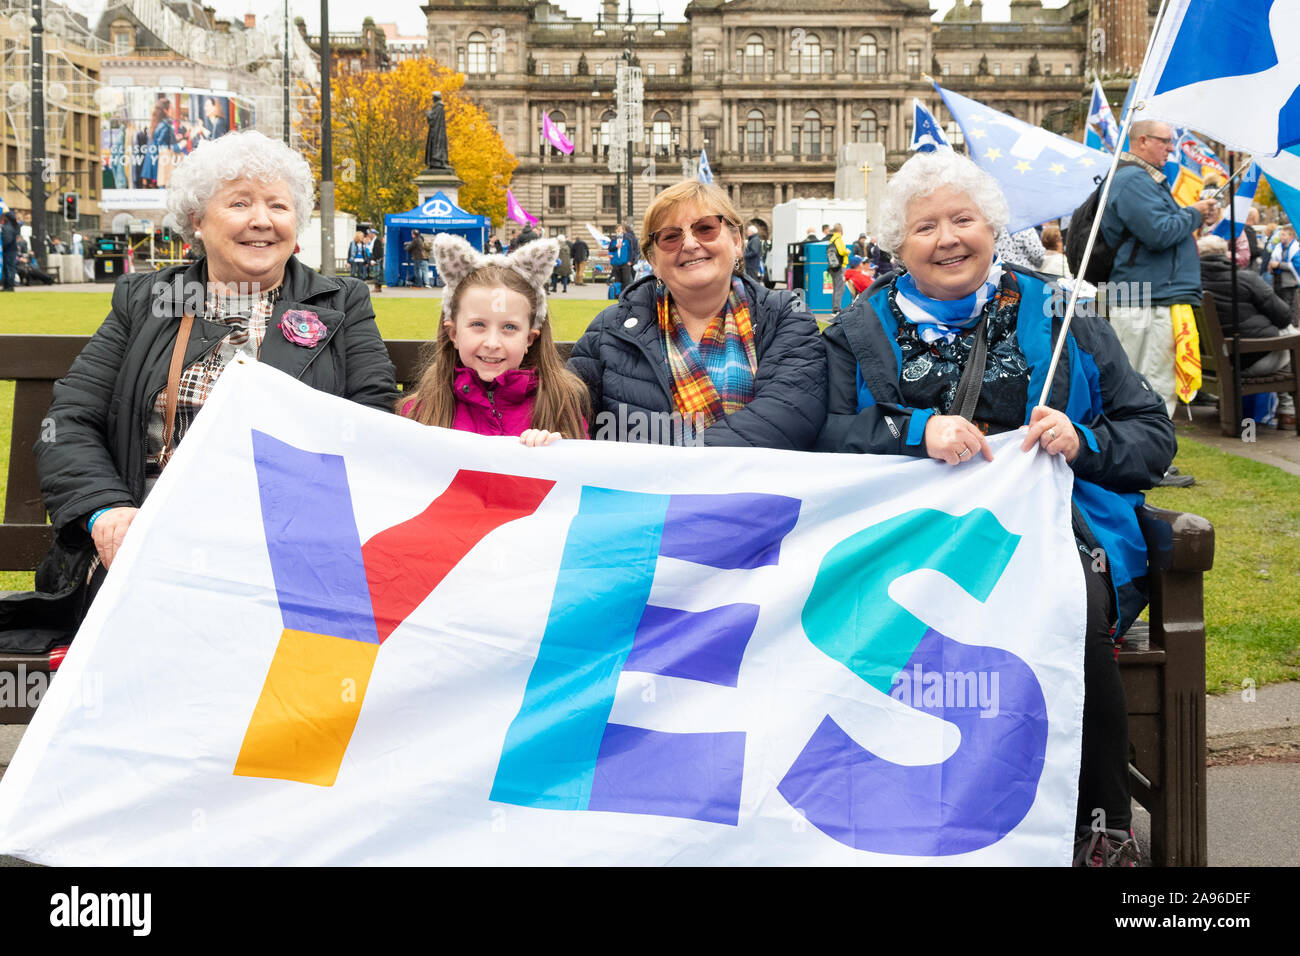 Schottische Unabhängigkeit Unterstützer halten ein großes JA Banner auf eine Unabhängigkeit, die Rallye 2020 indyref auf dem George Square, Glasgow, Schottland, Großbritannien Stockfoto